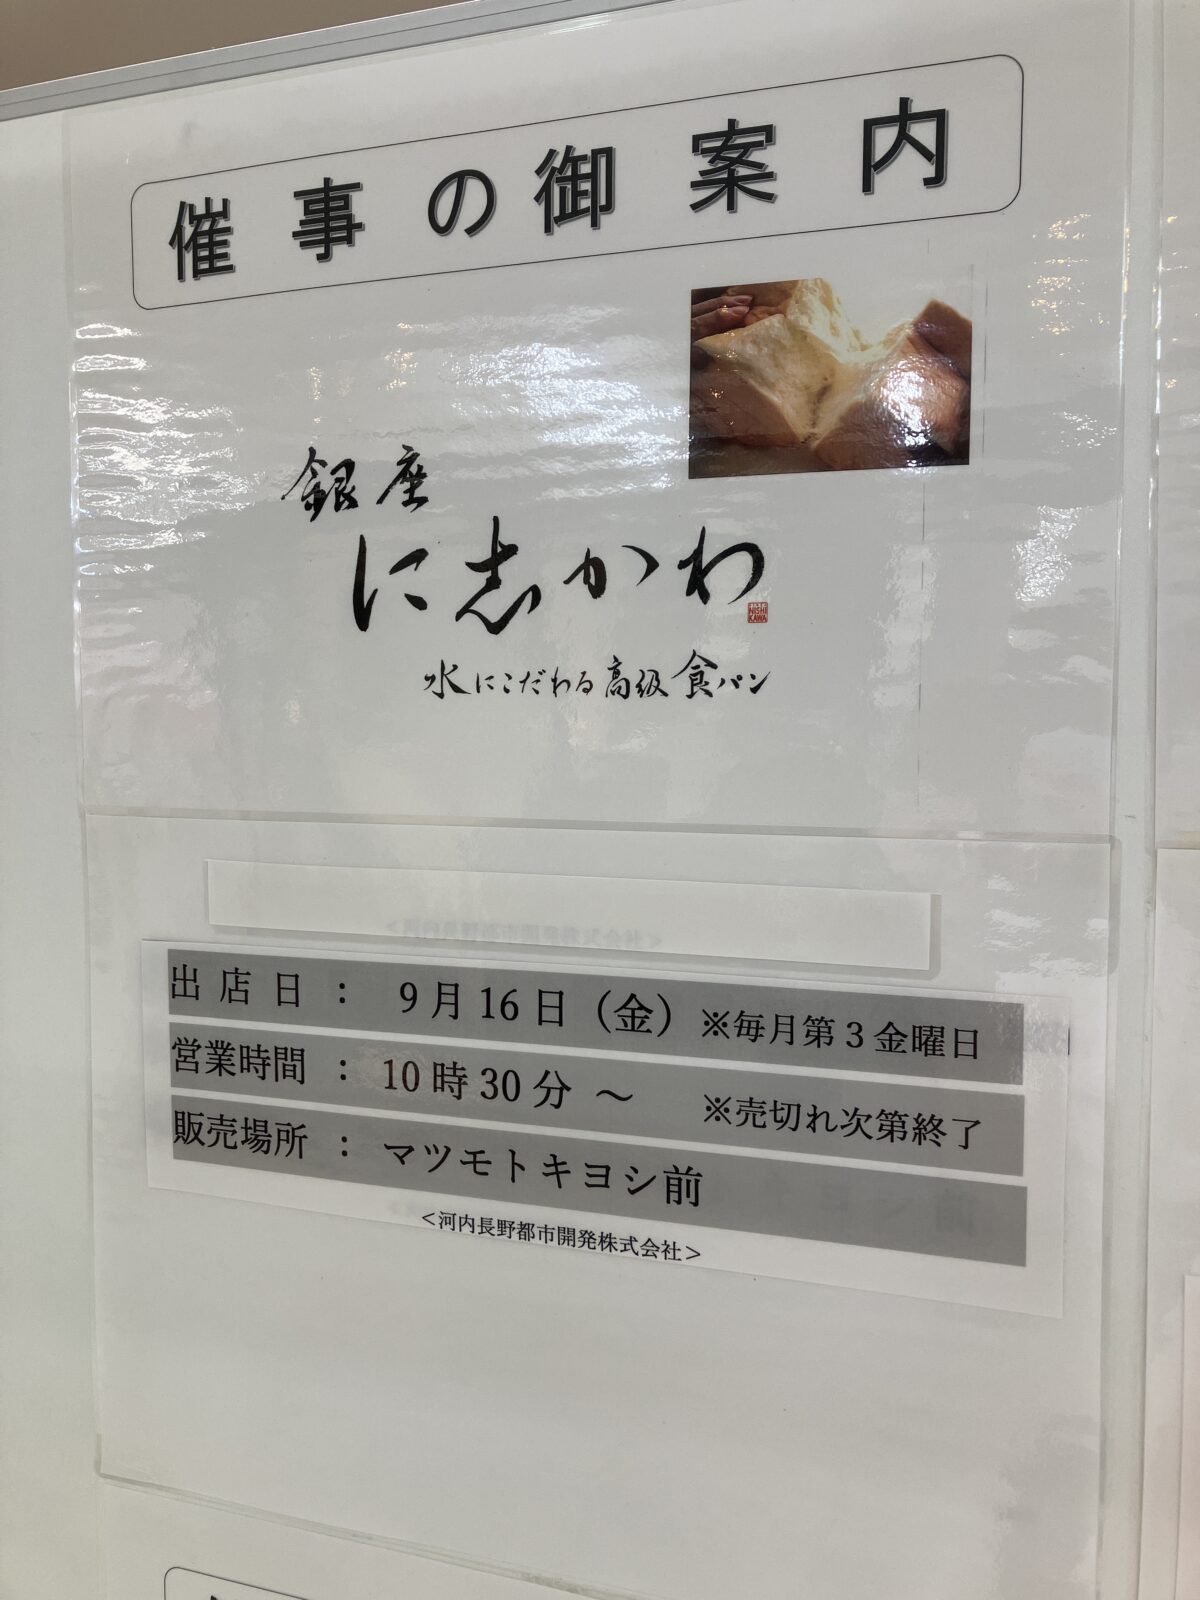 【イベント】河内長野市☆水にこだわる高級食パン「銀座 に志かわ」の催事販売があるよ～！：